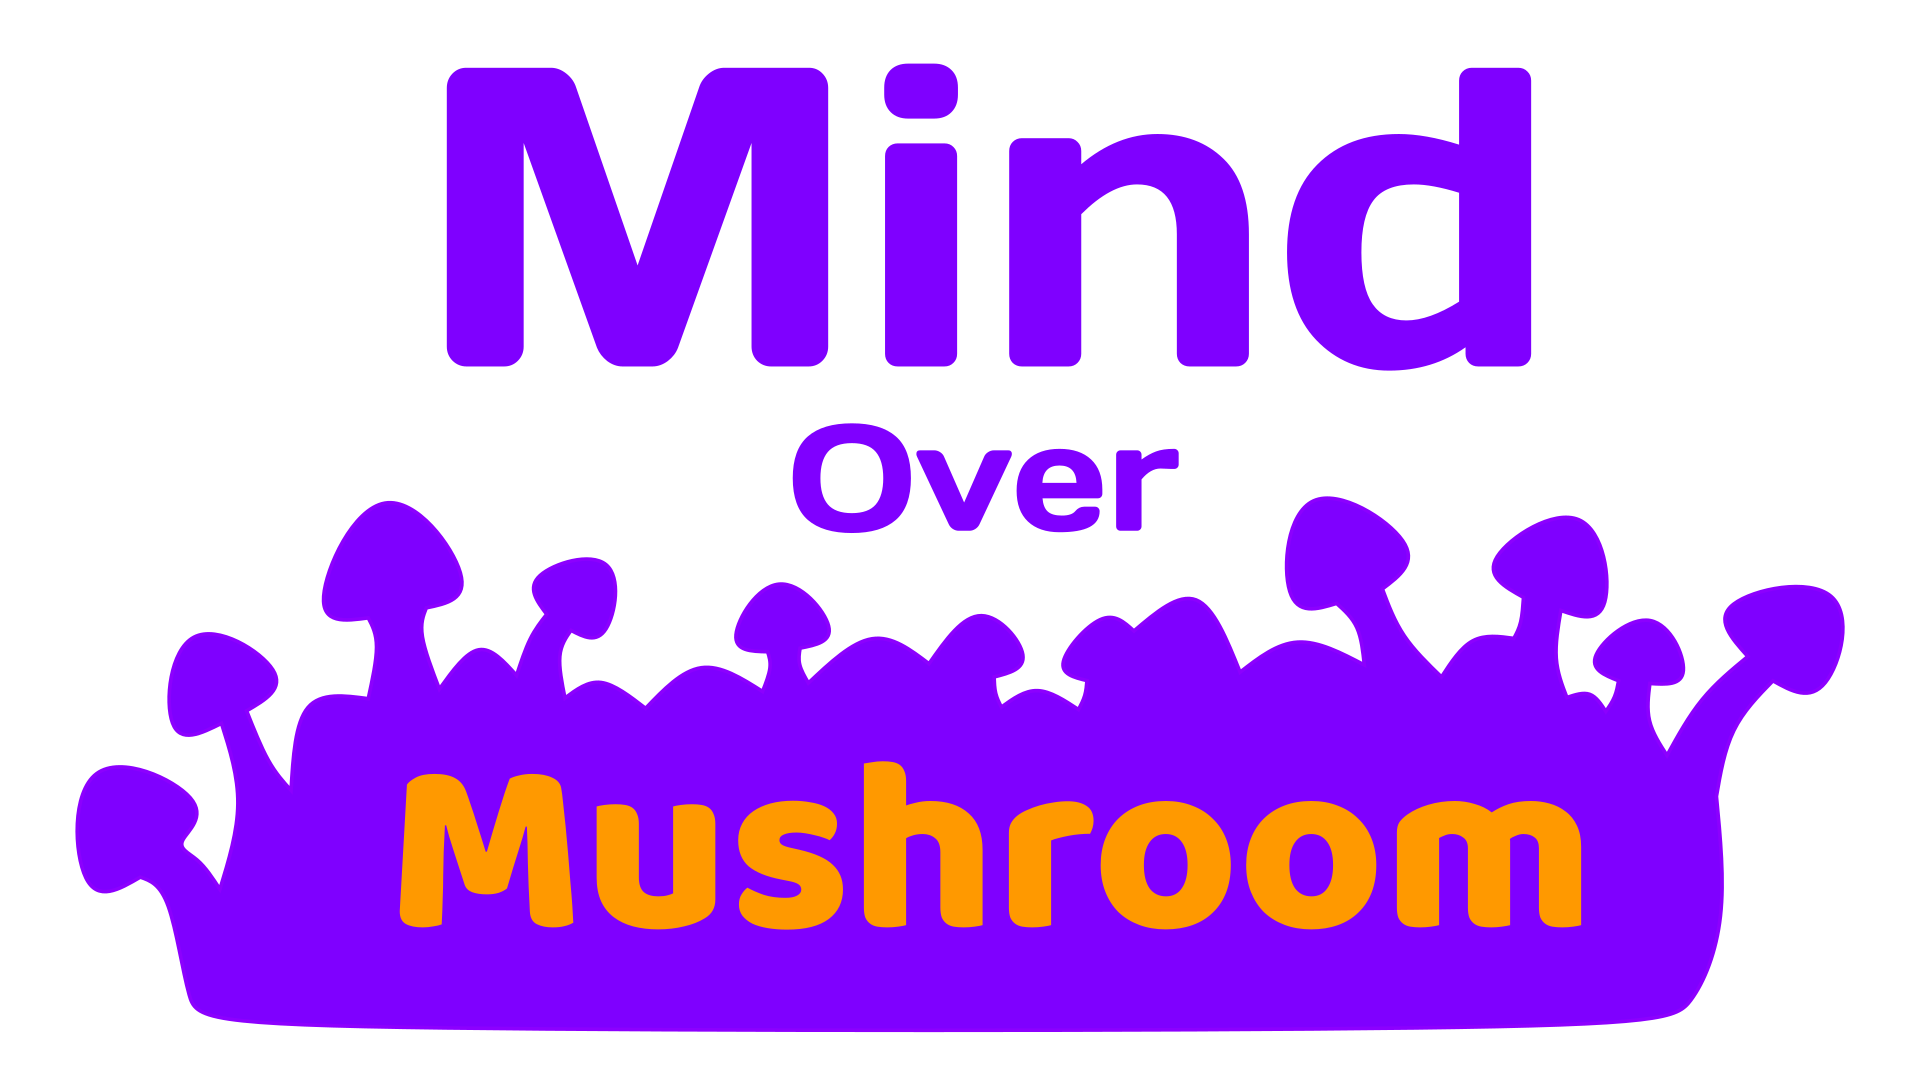 Mind Over Mushroom